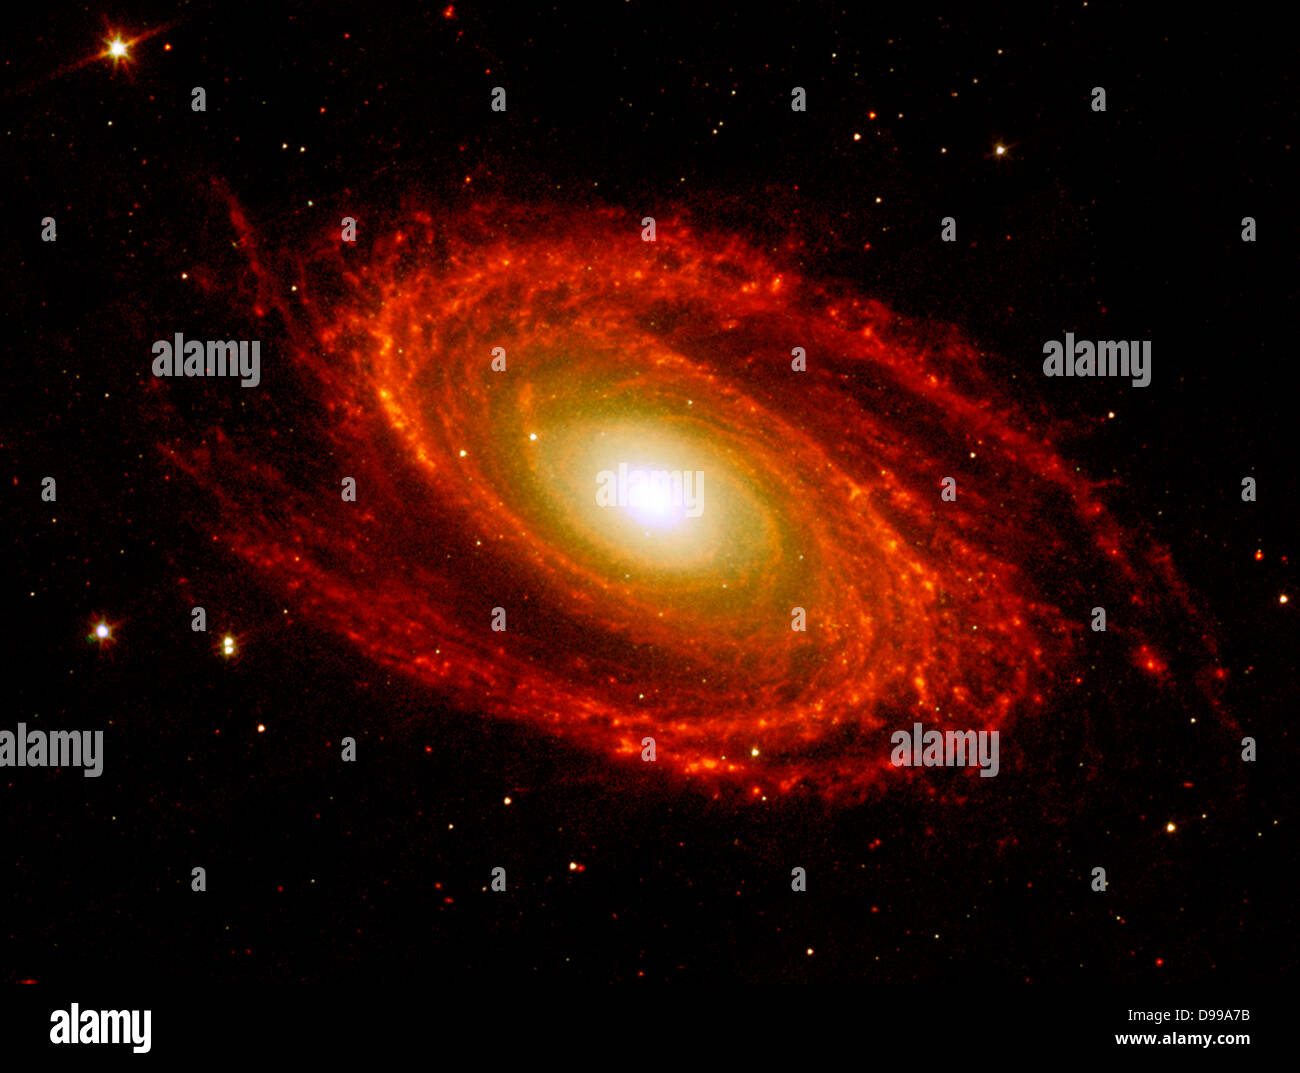 Die Spiralarme der nahen Galaxie Messier 81, bei einer Entfernung von 12 Millionen Lichtjahre von der Erde entfernt. Spitzer Space Telescope. Stockfoto